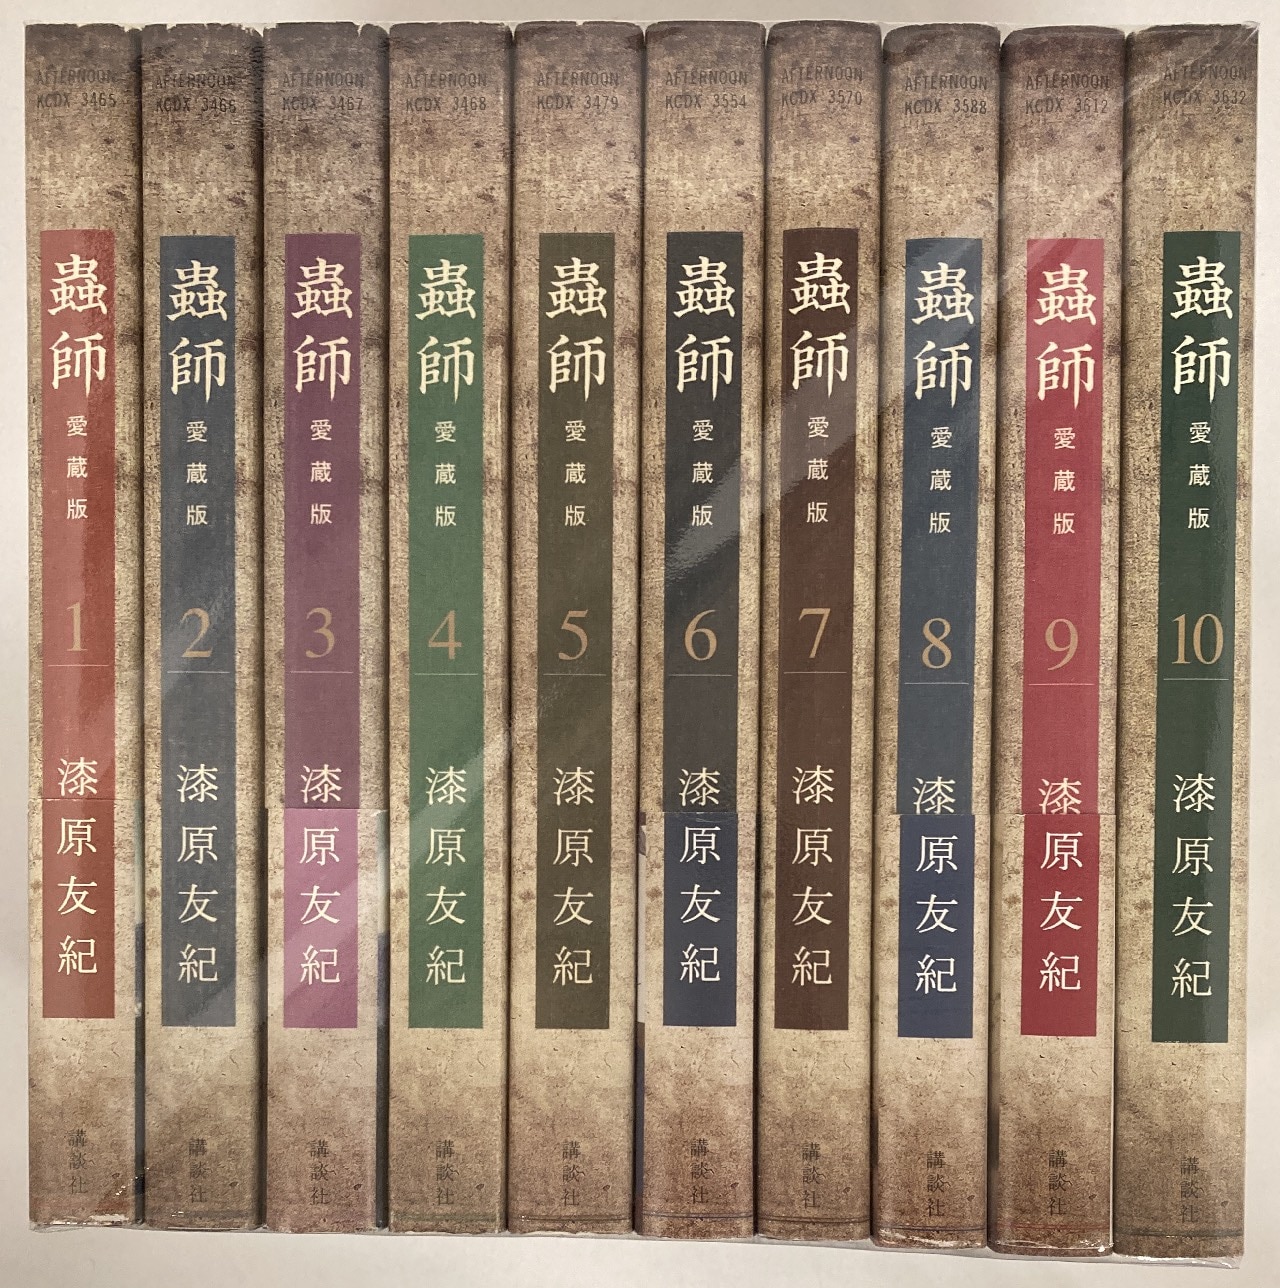 蟲師 愛蔵版 全巻 全10巻+1巻 - 全巻セット